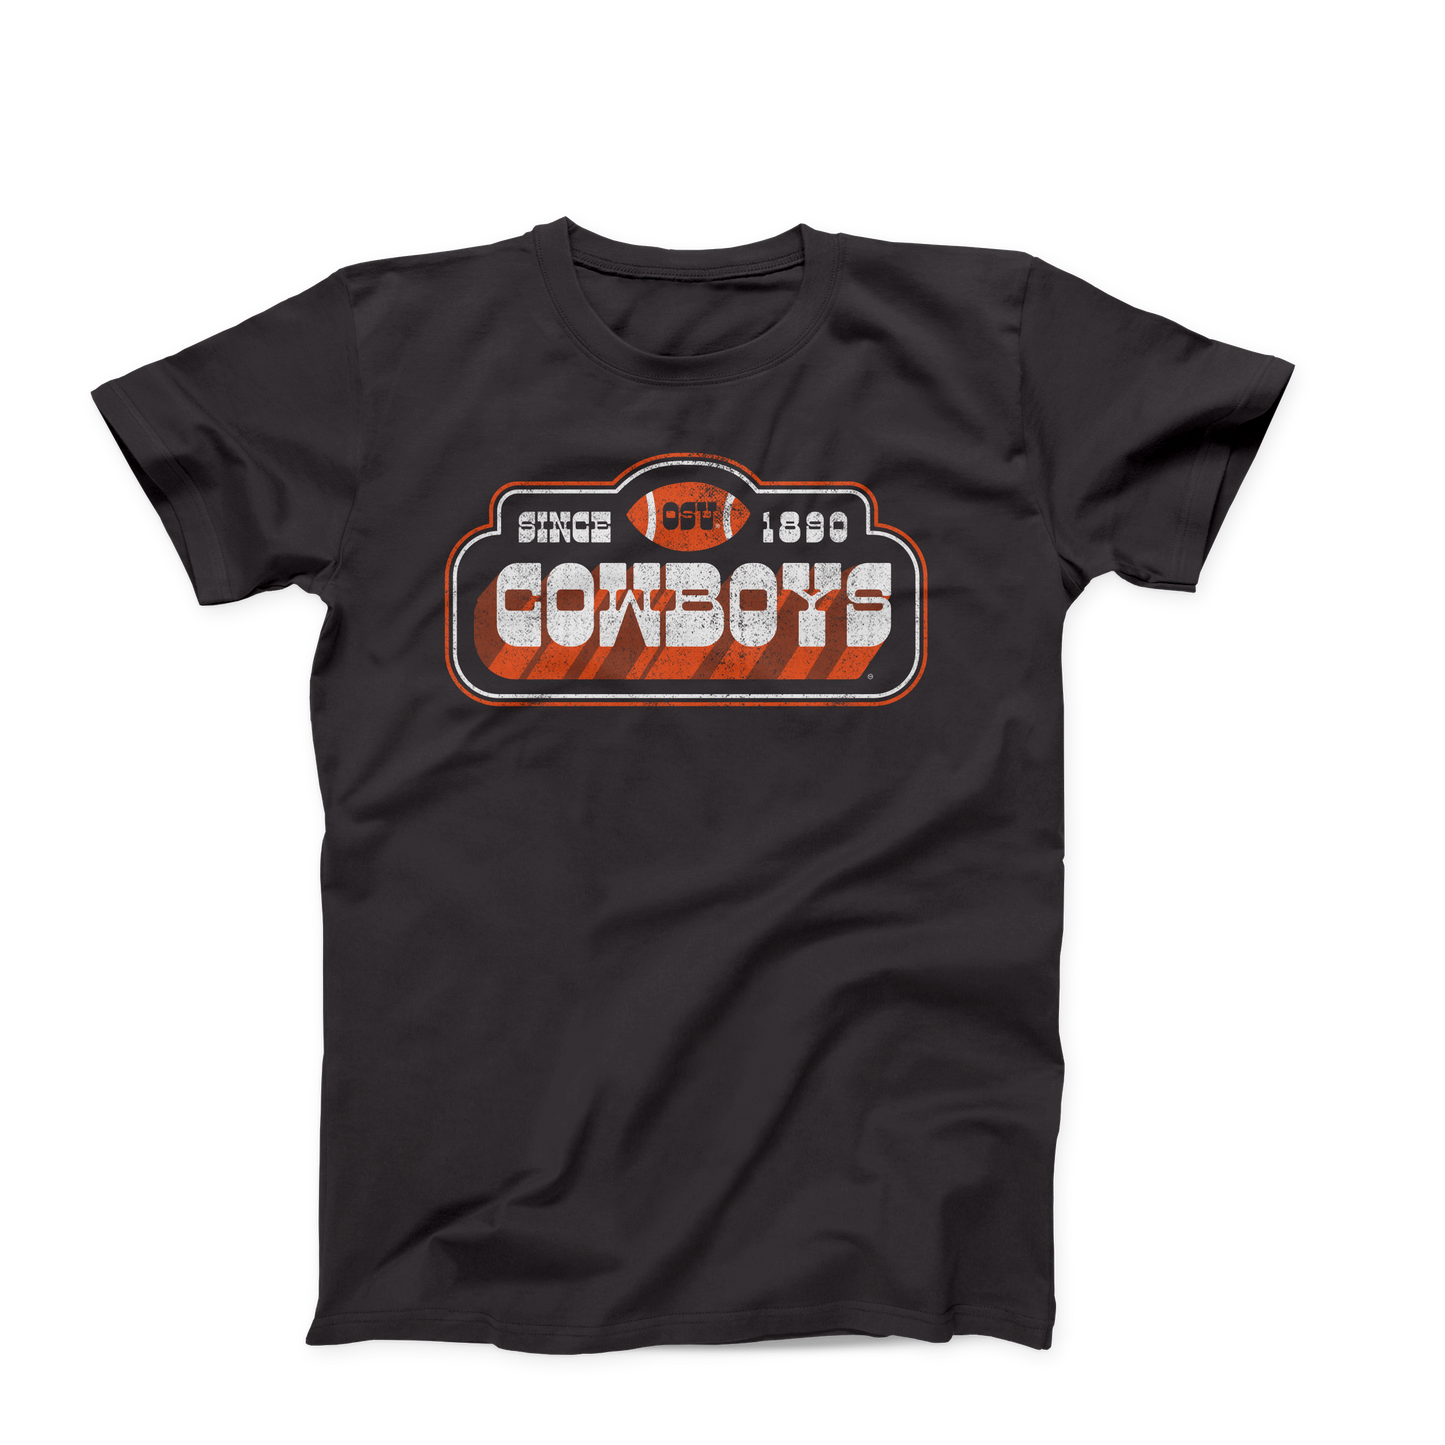 Vintage OSU Cowboys Design on a dark grey heather colored t-shirt